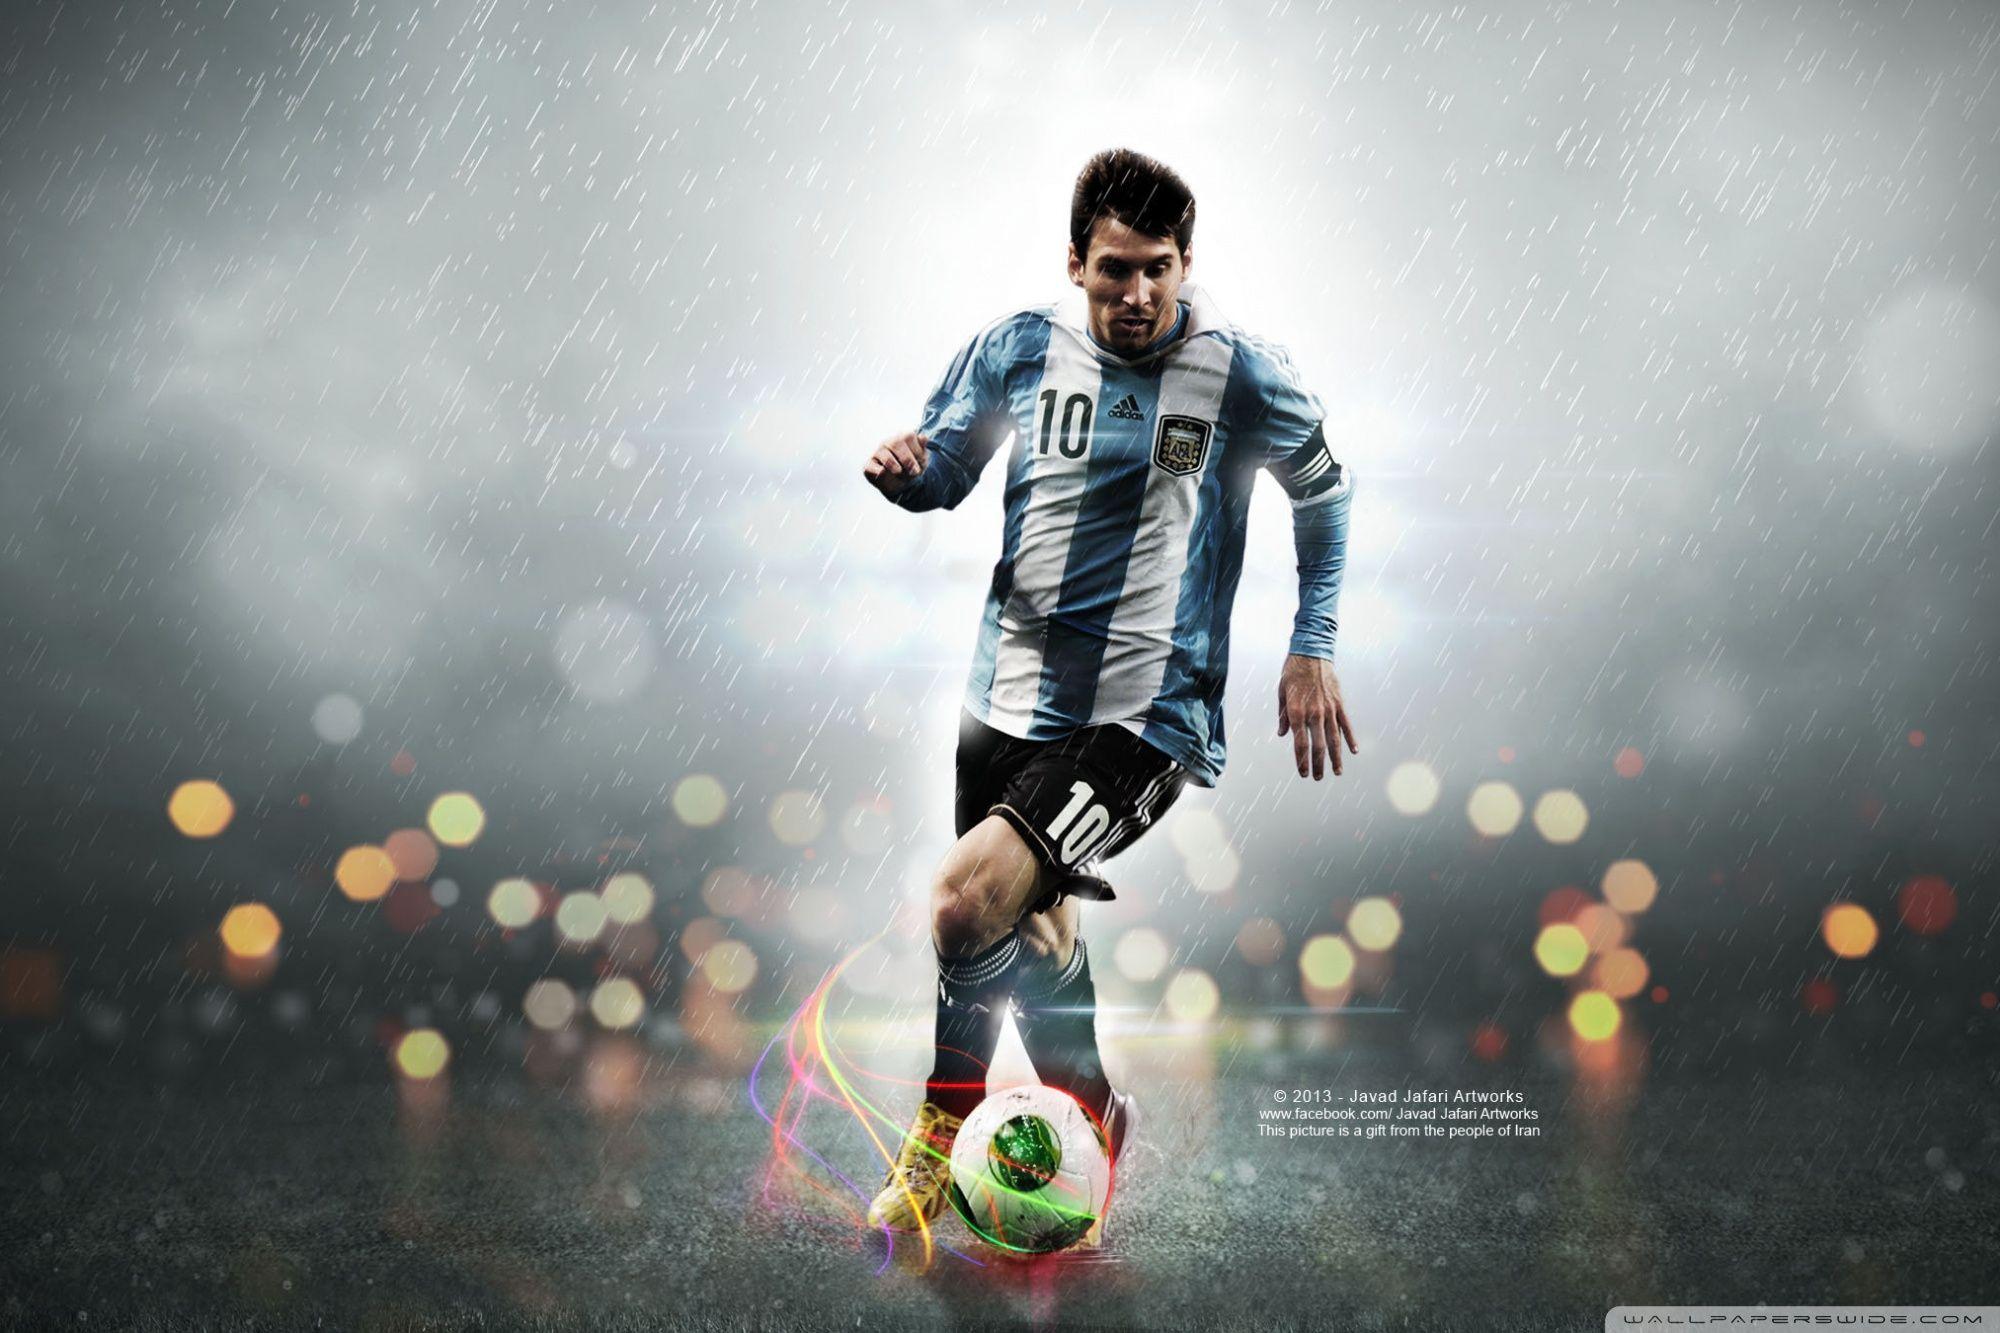 Lionel Messi Widescreen Wallpaper: Sự quyến rũ và độc đáo của Lionel Messi được thể hiện ở mỗi hình nền. Những hình nền widescreen của Messi sẽ giúp bạn trải nghiệm trọn vẹn tài năng và sự ảnh hưởng của anh ta.